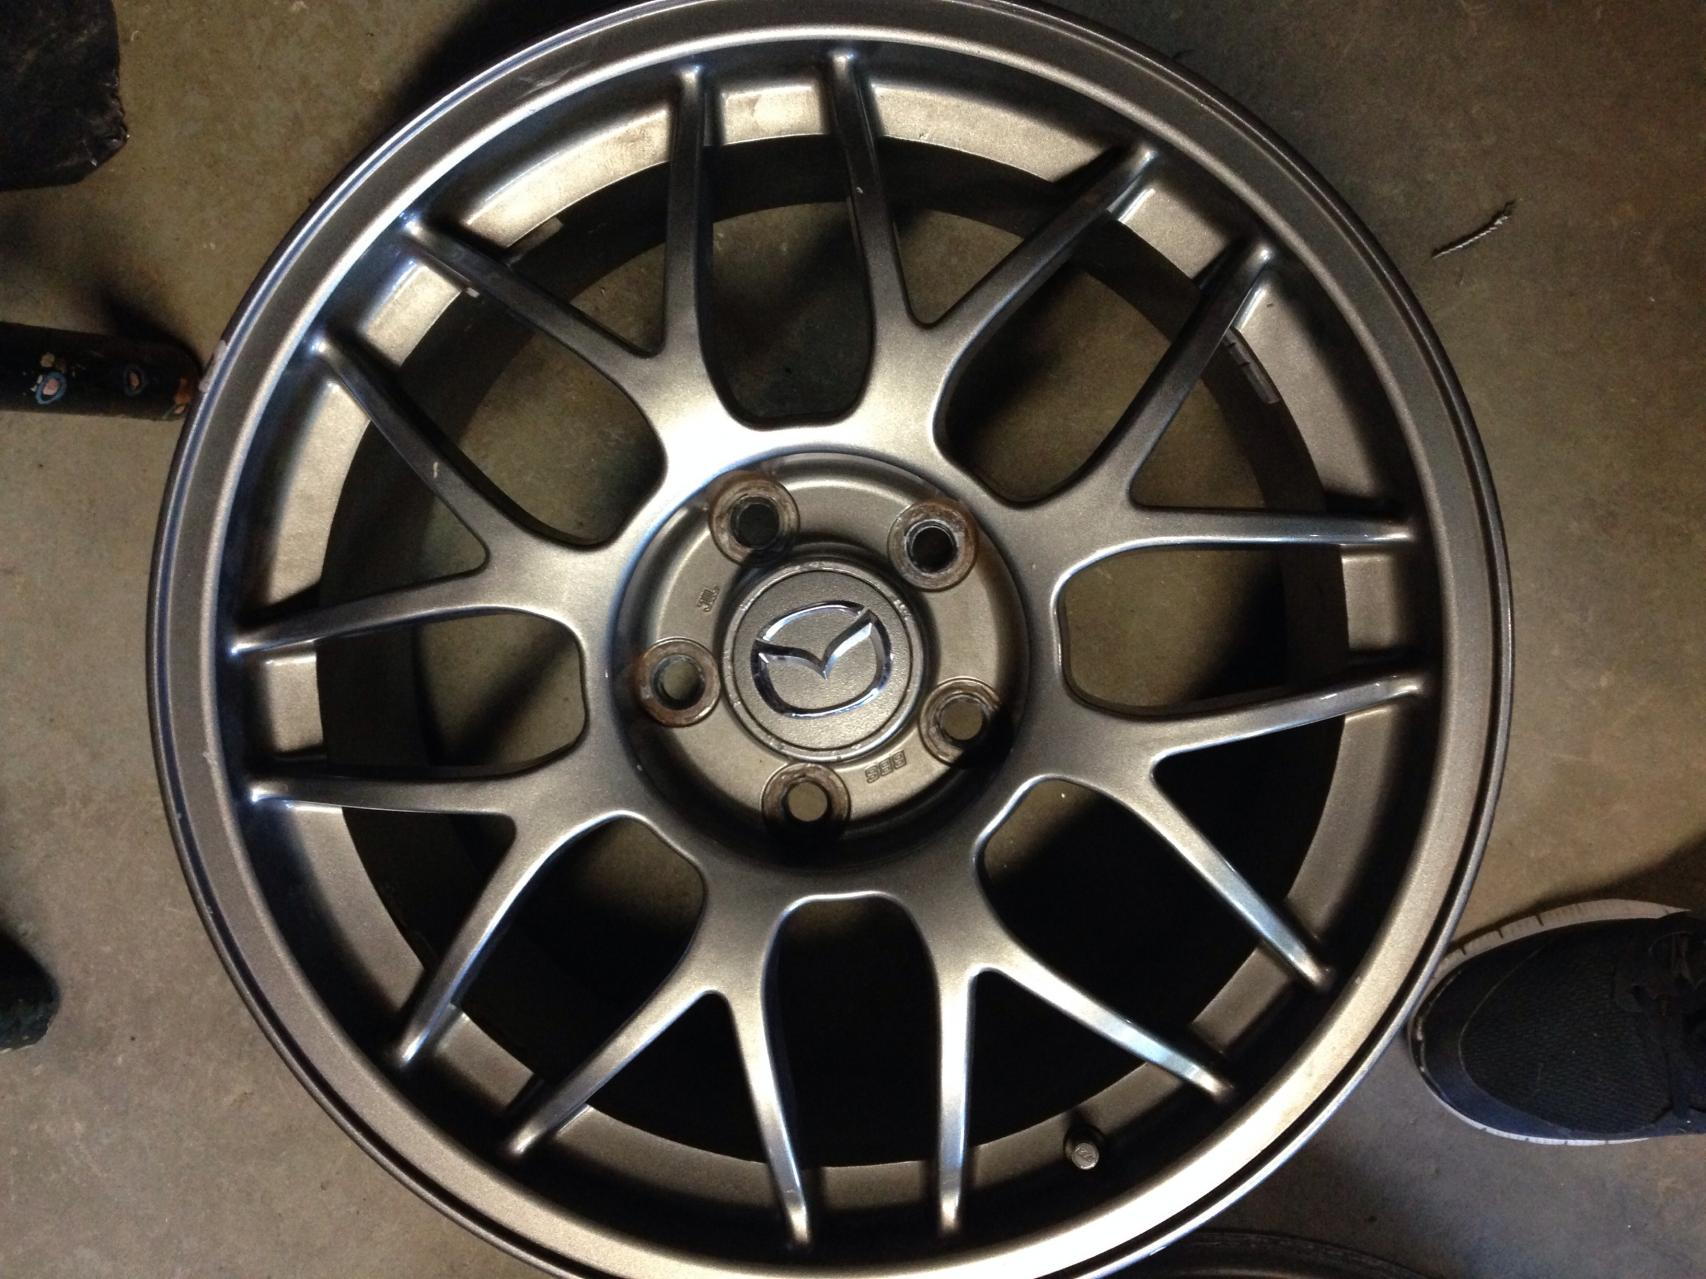 RZ Gunmetal wheel color??? -  - Mazda RX7 Forum